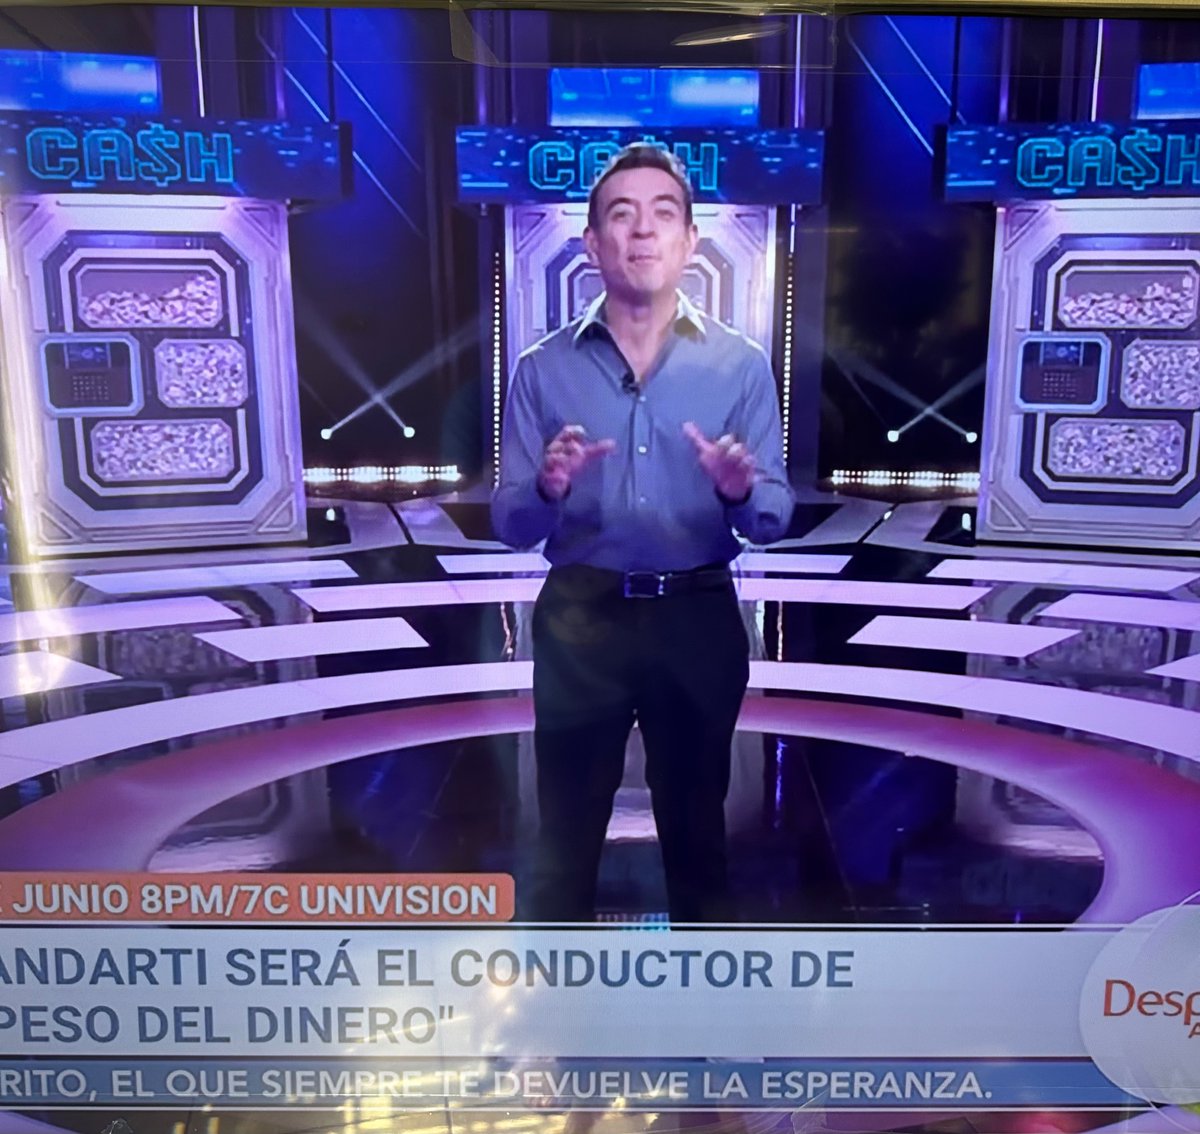 #LCDLF4

Sandarti en un nuevo show en Univision 🤭🤭